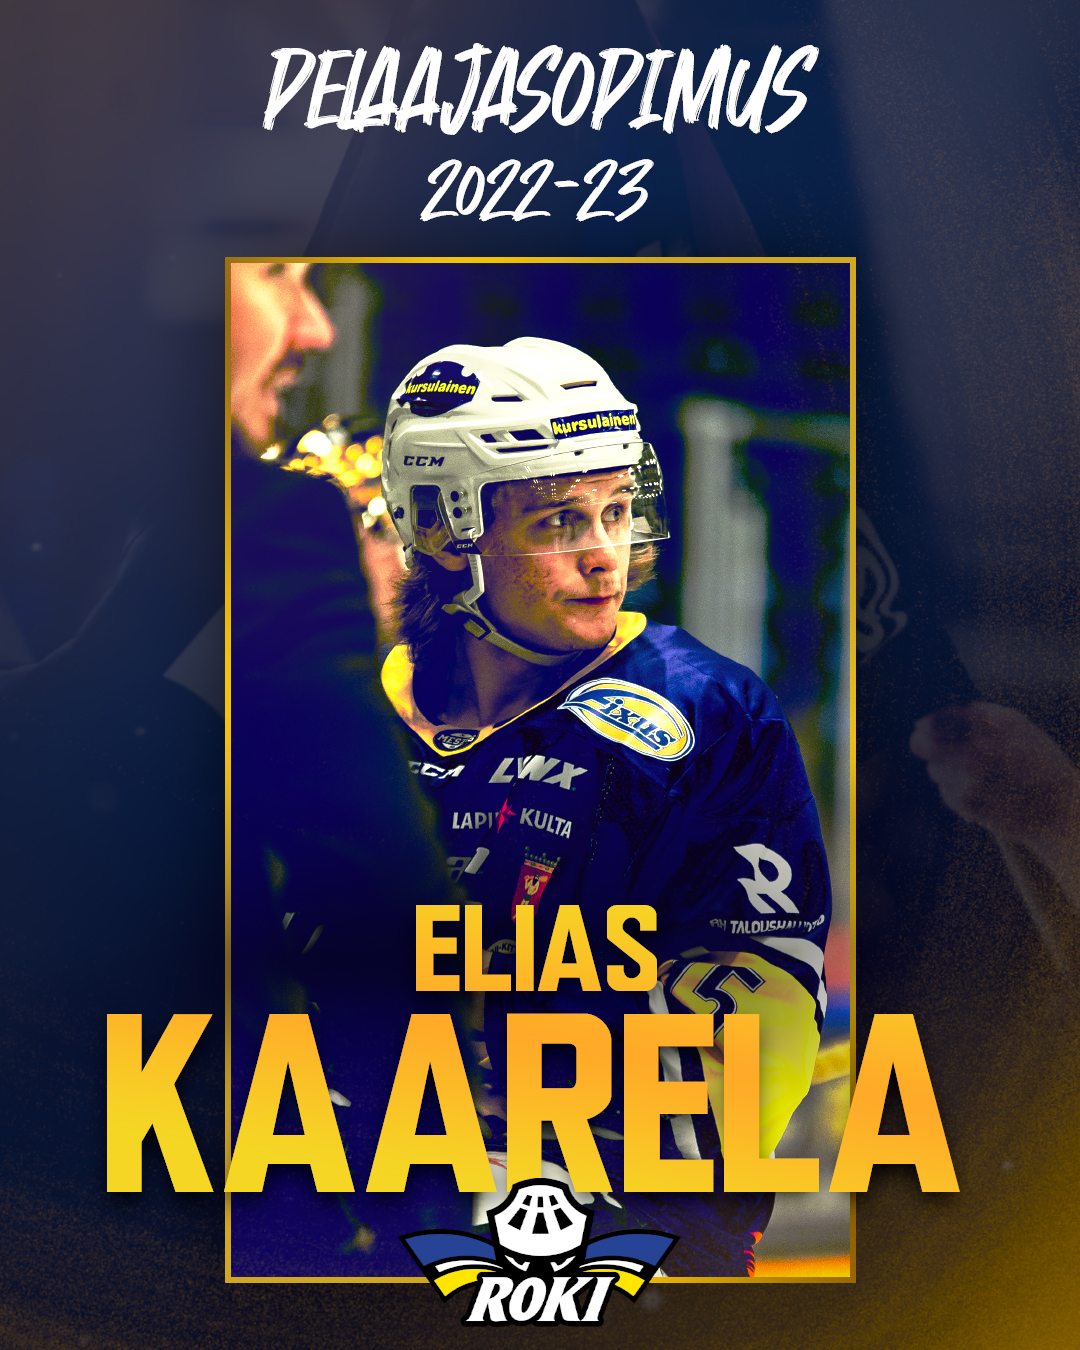 Elias Kaarela jatkaa - 900 korttia varattu